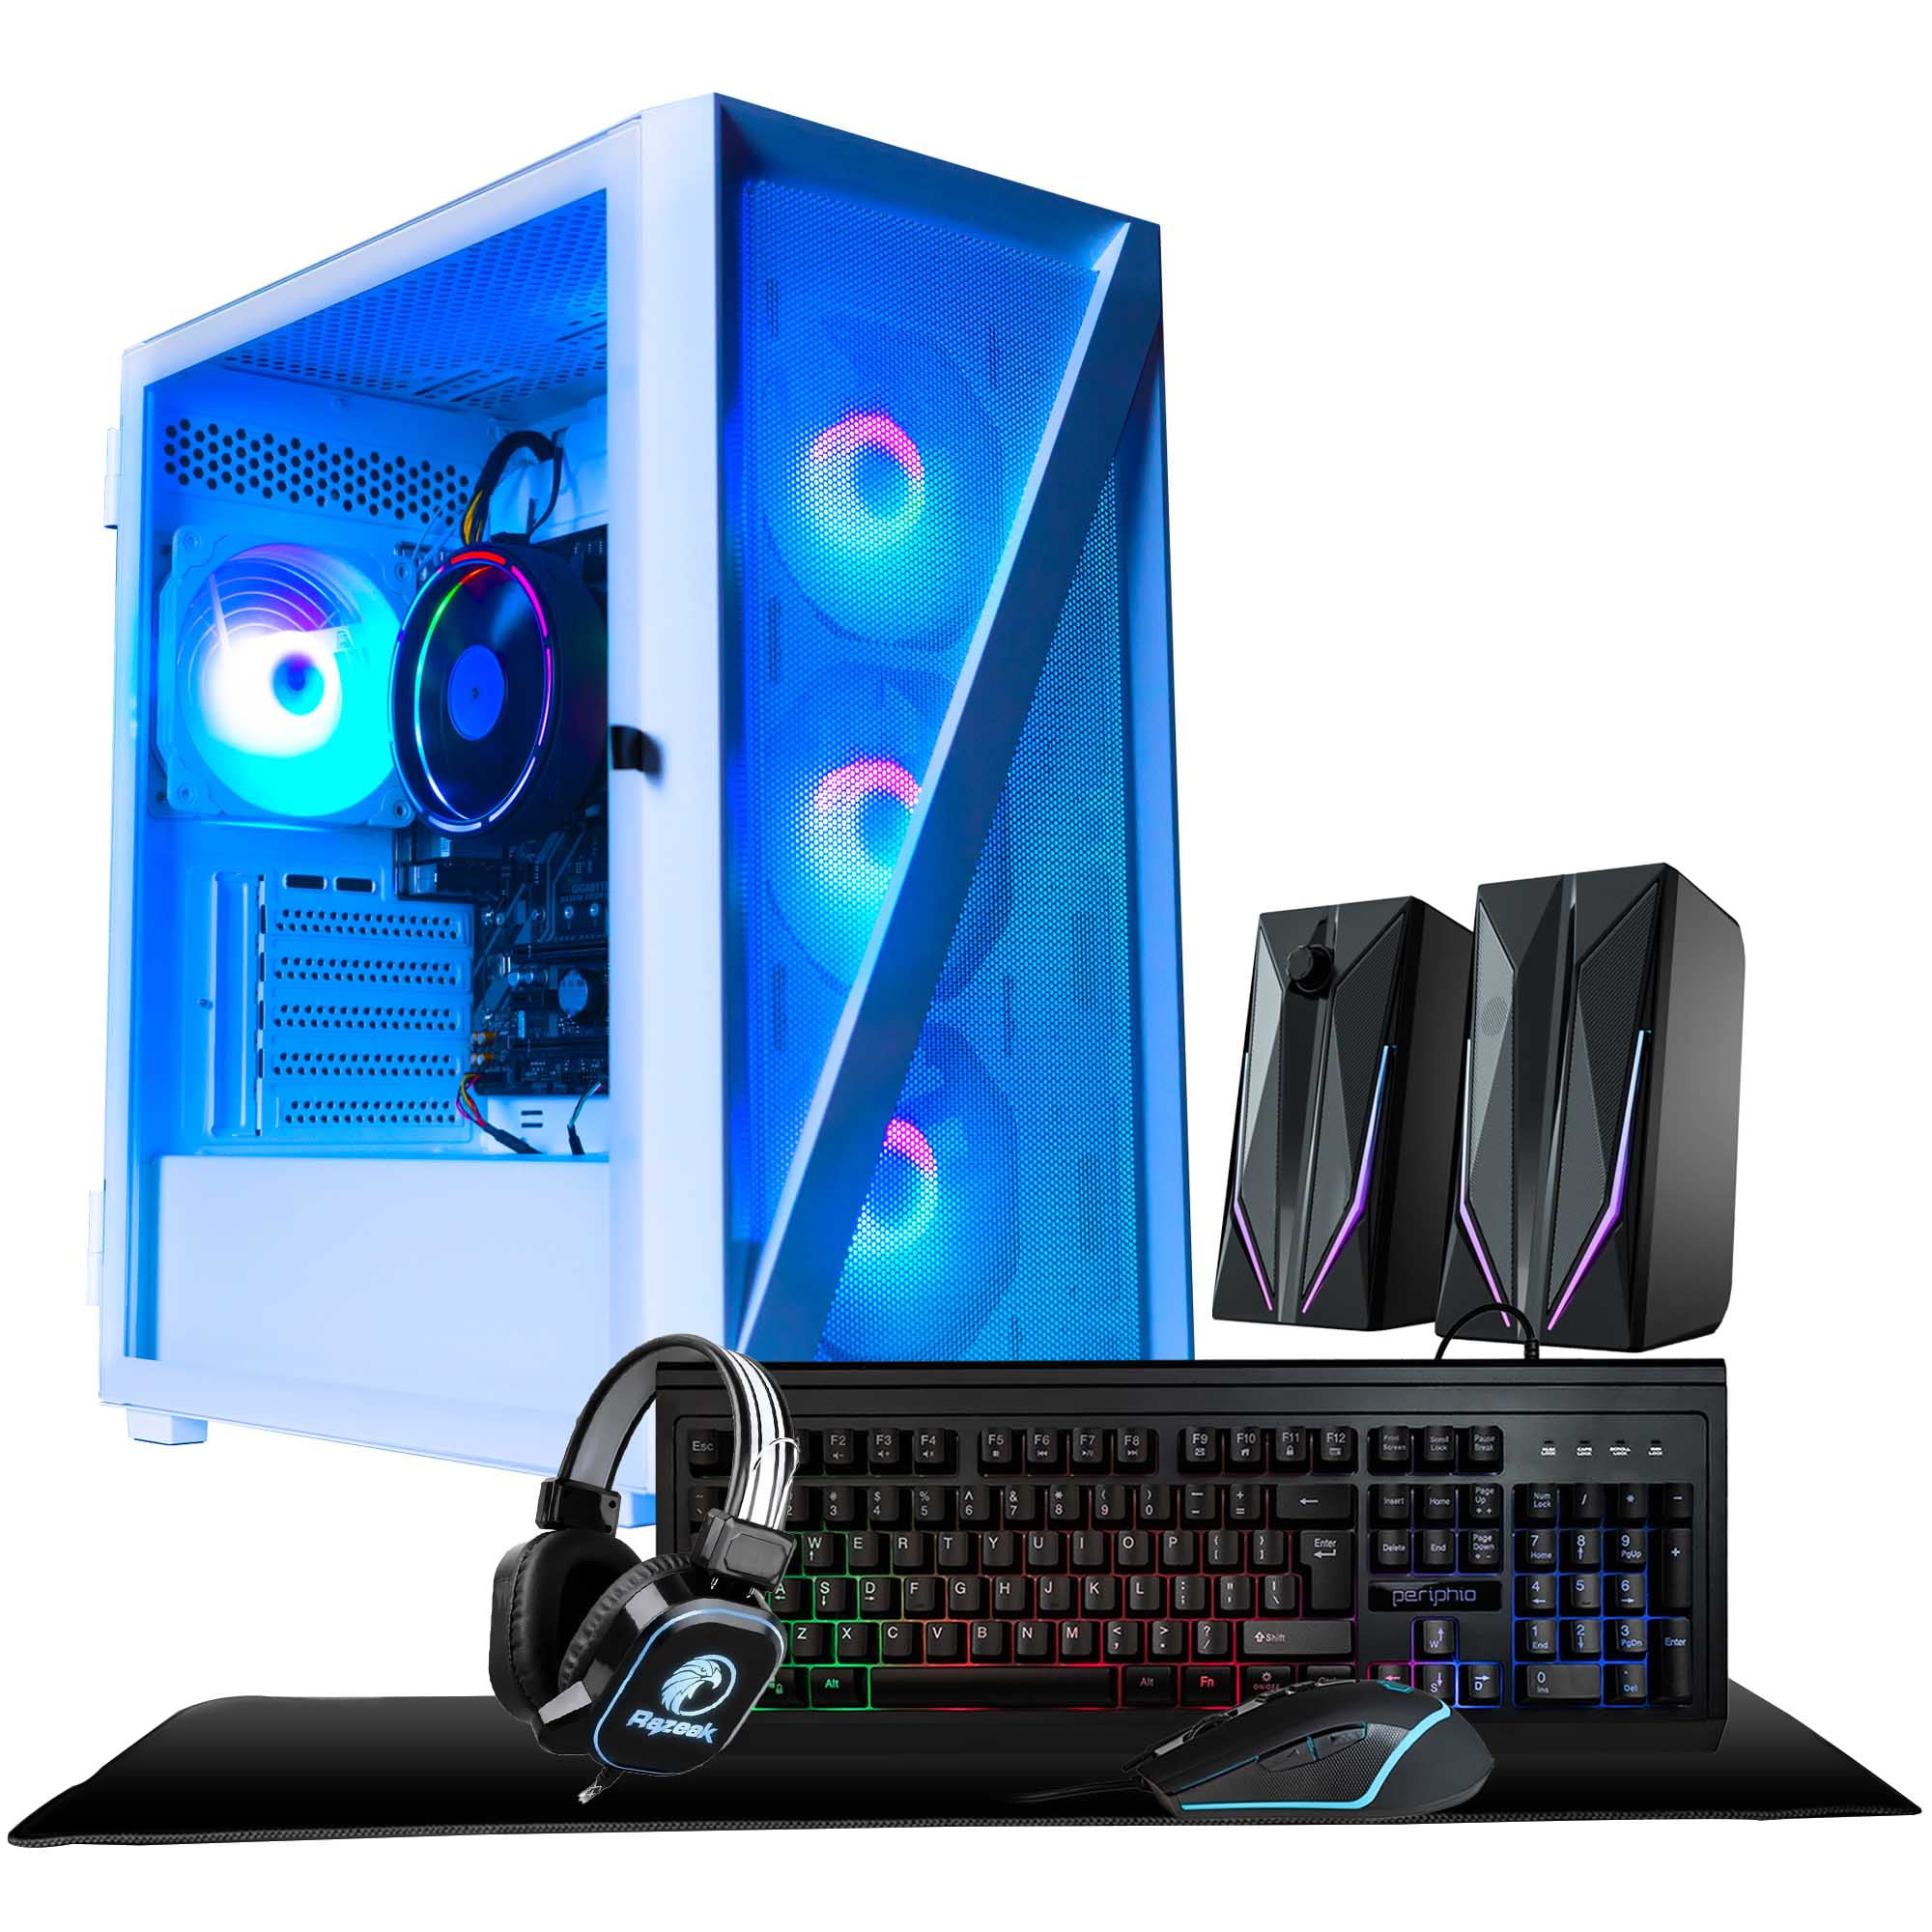 iBUYPOWER Pro Gaming PC Computer Desktop SlateMR 215a (AMD Ryzen 5 5600G  3.9 GHz,AMD Radeon RX 6600XT 8GB, 16GB DDR4, 480 GB SSD, WiFi Ready,  Windows